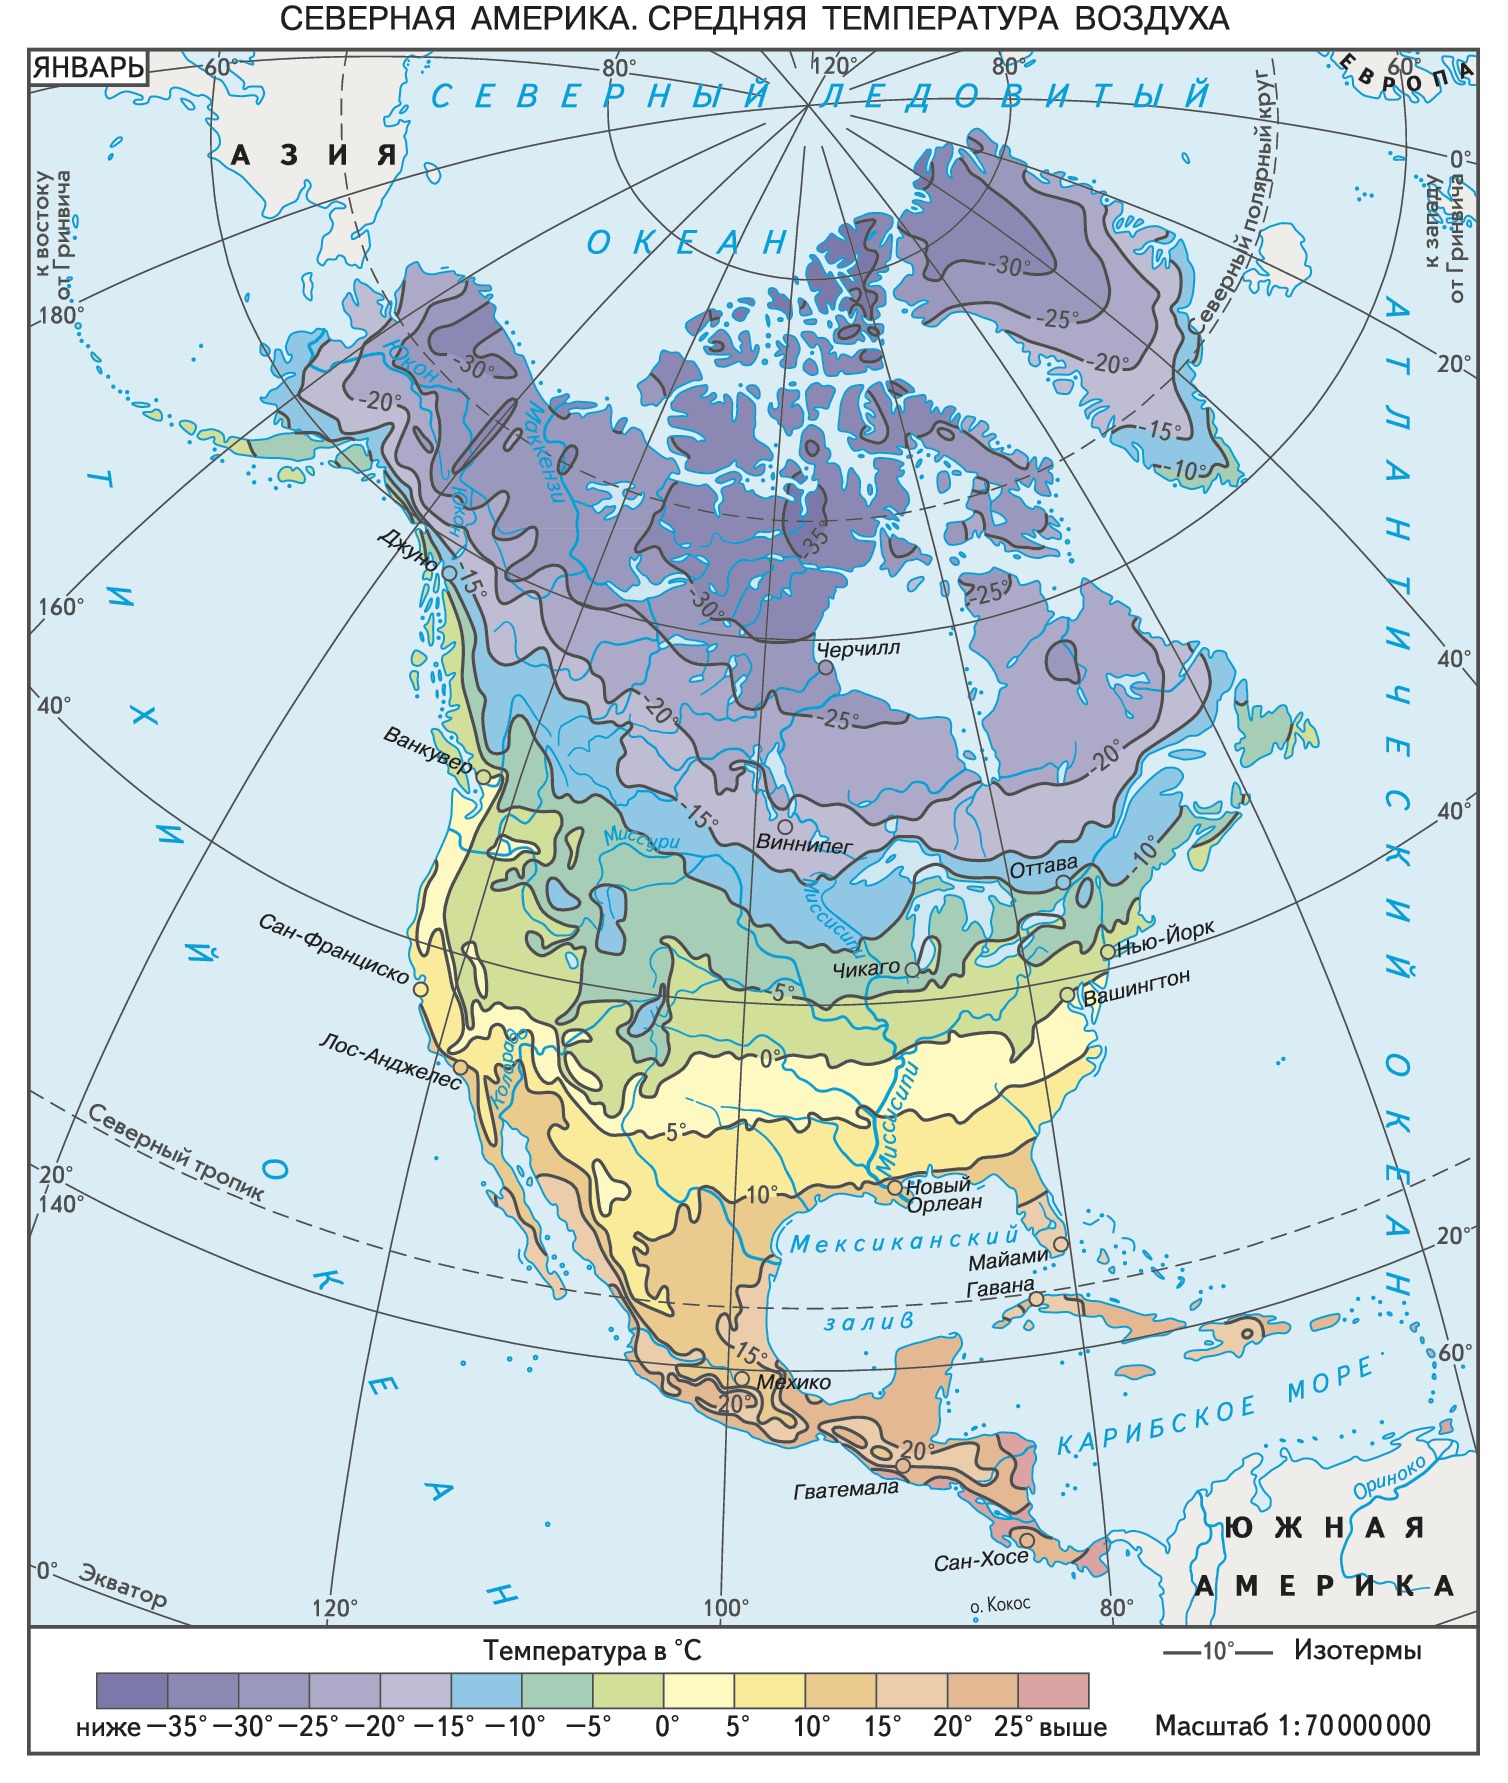 Какой пояс занимает большую часть северной америки. Карта климатических поясов Северной Америки. Карта климатические пояса Северной Америки 7. Климатическая карта Северной Америки 7 класс. Карта климатических поясов Северной Америки 7 класс.